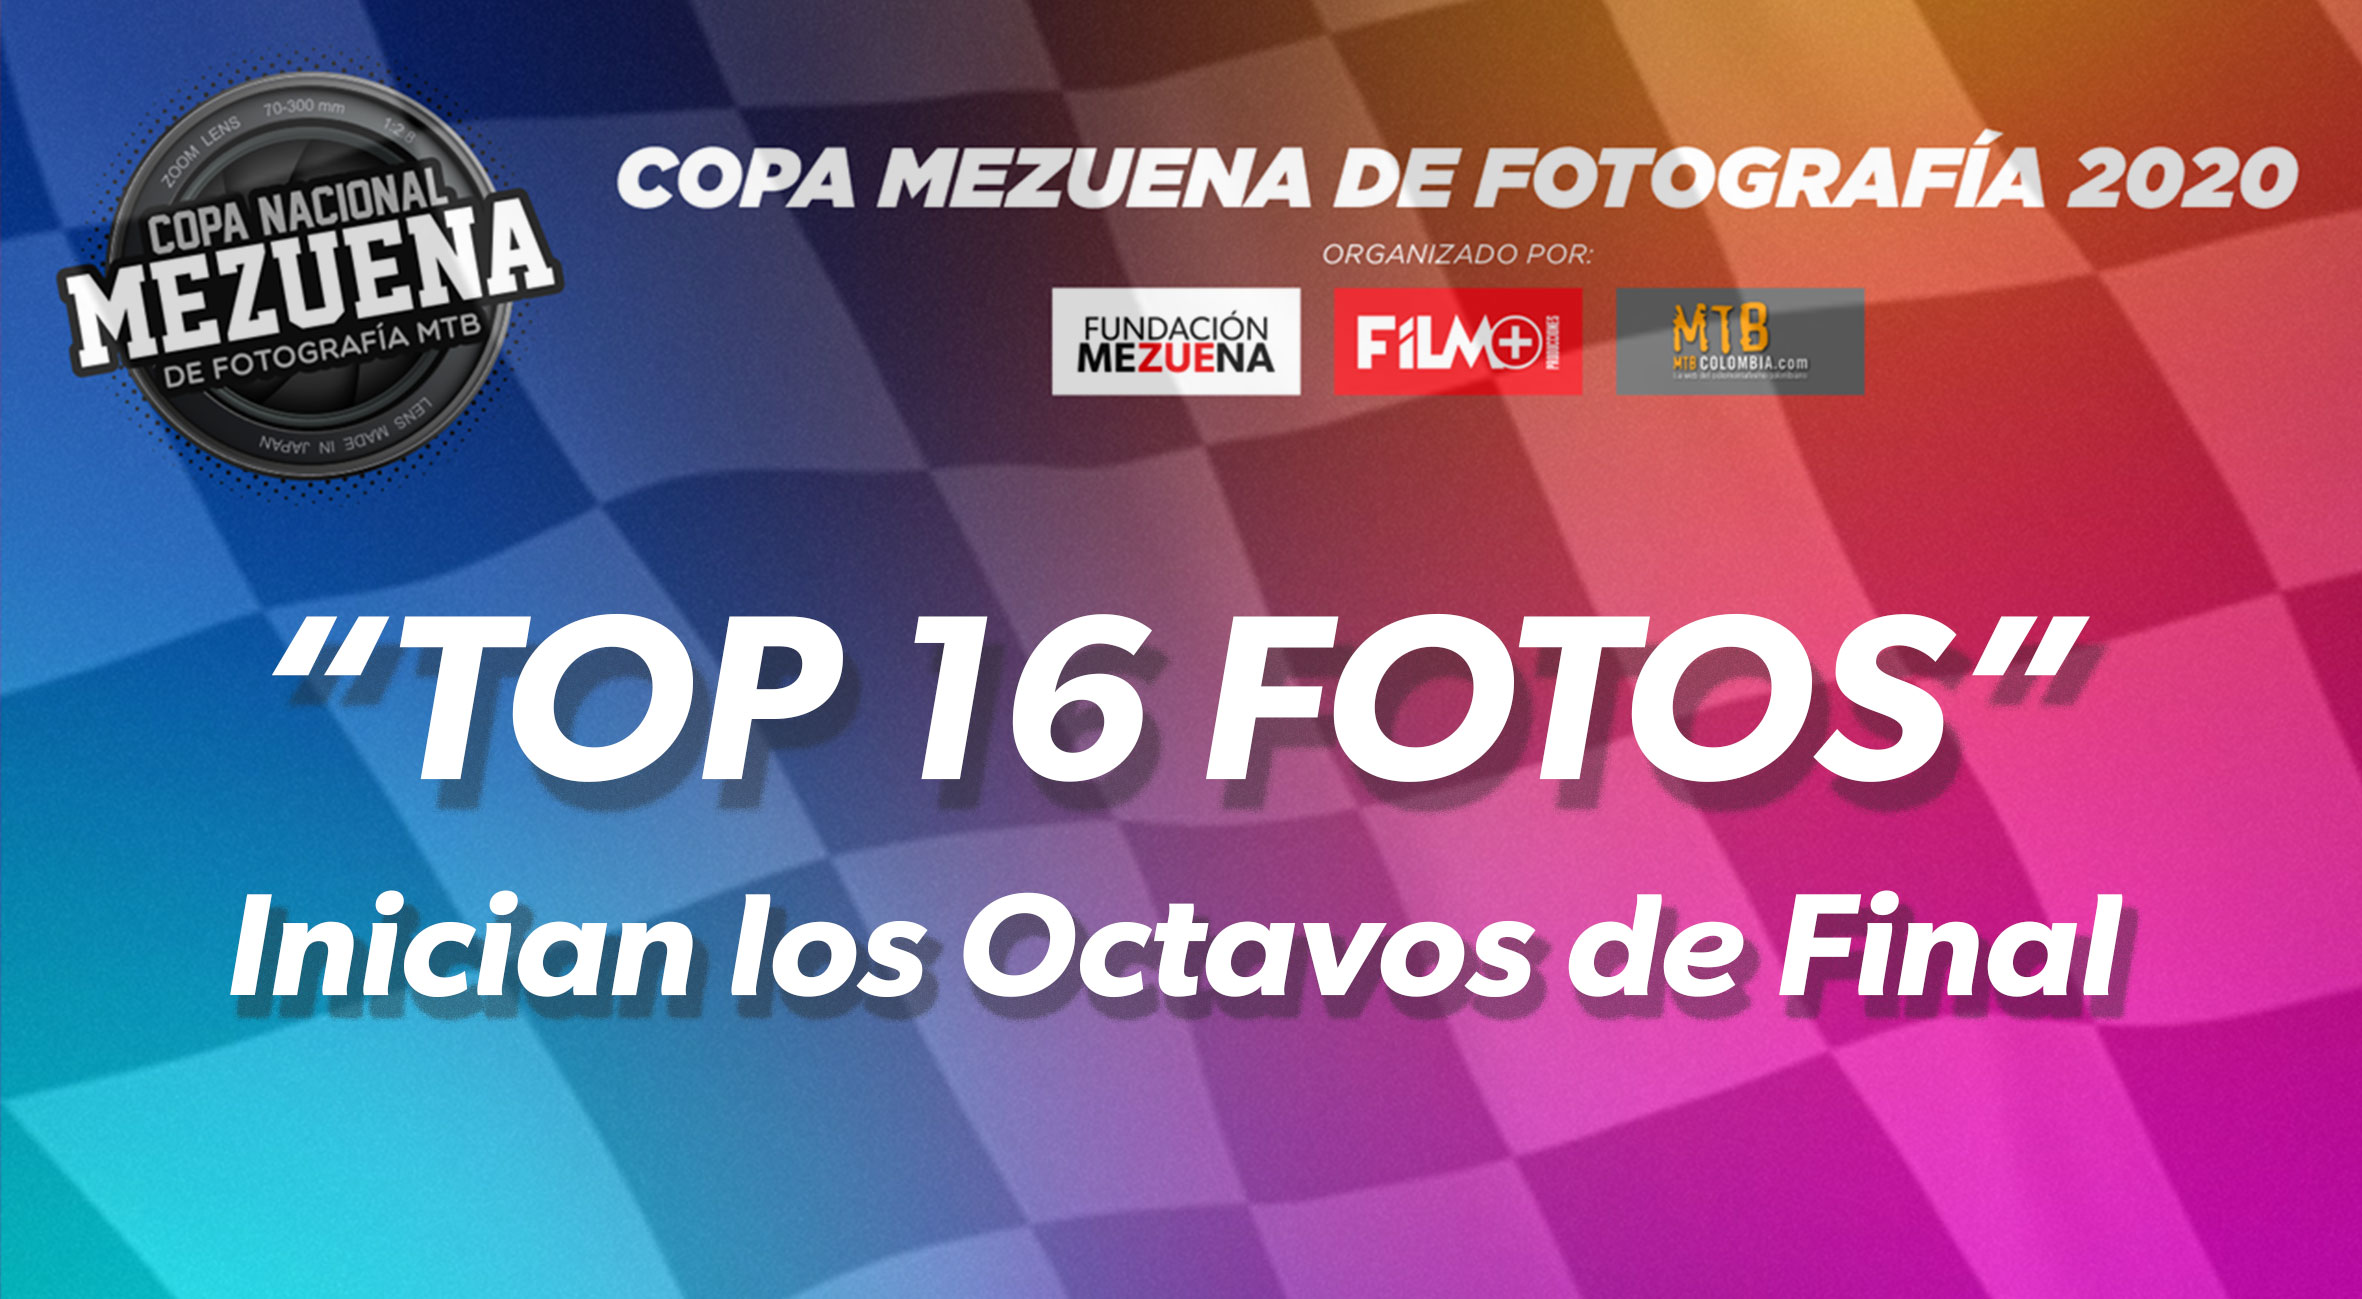 Estas son las 16 fotos clasificadas a los Octavos de final de la Copa Nacional Mezuena de Fotografía